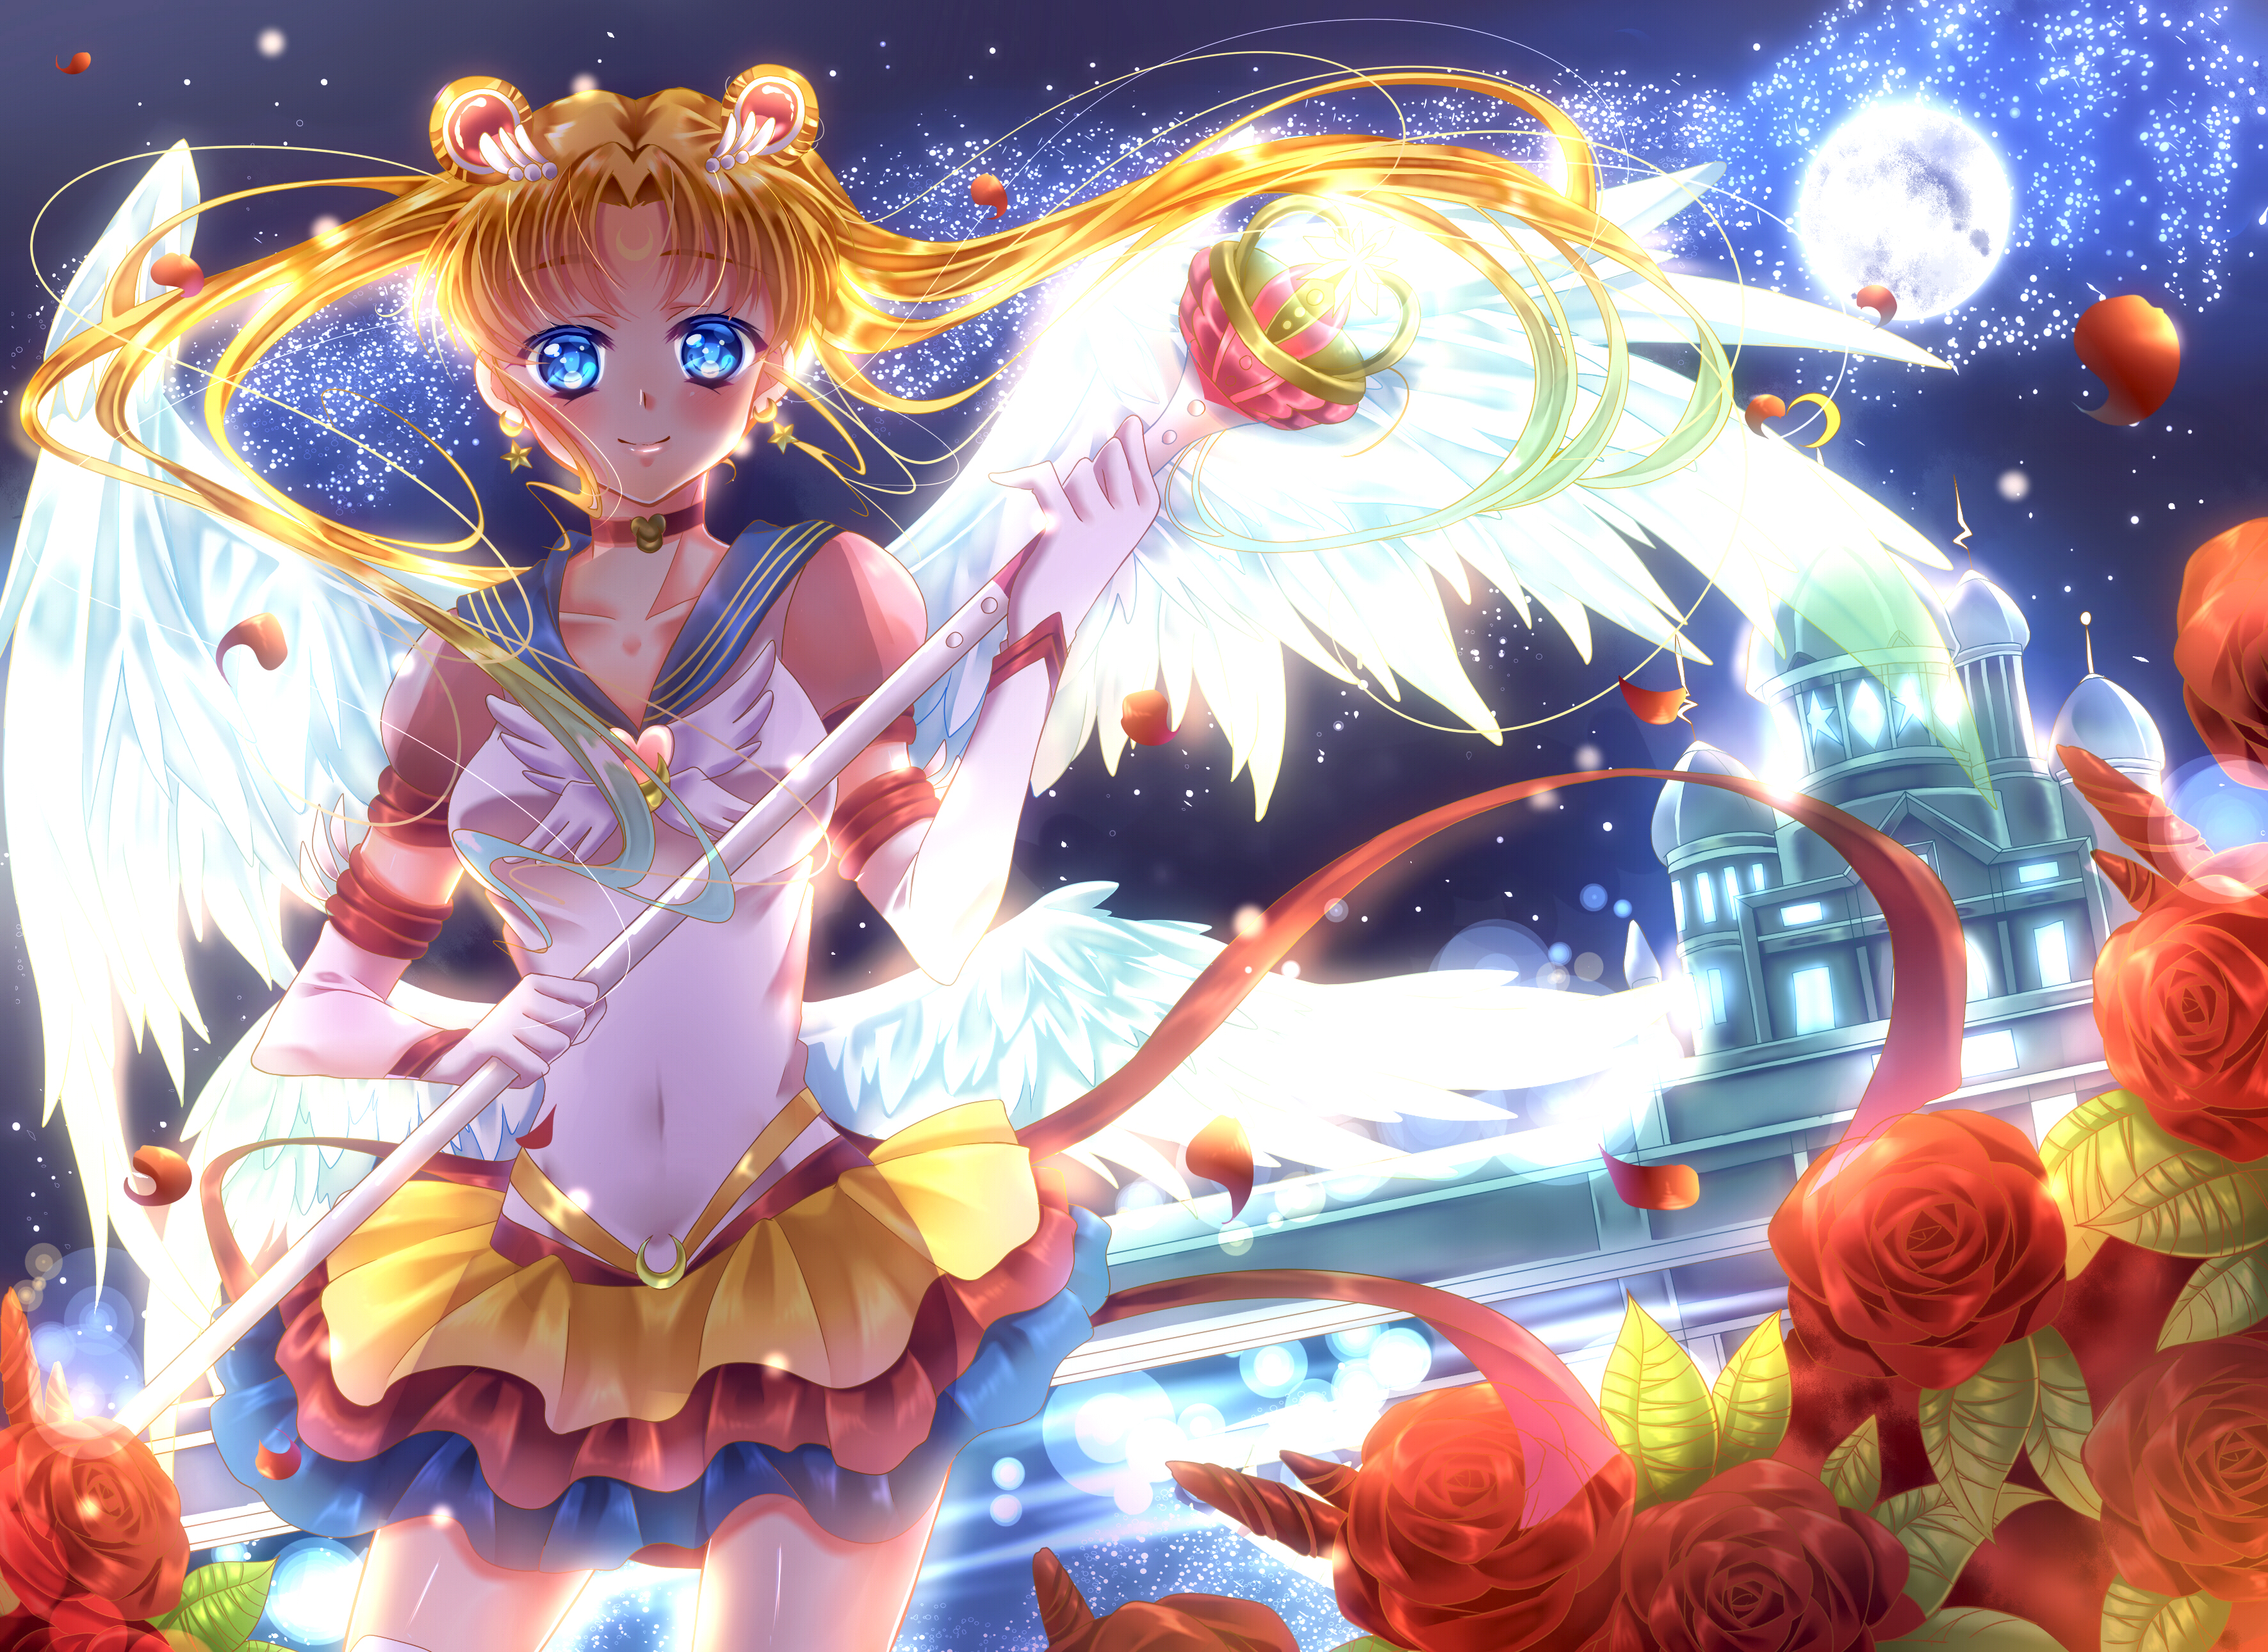 Usagi Tsukino Sailor Moon Long Hair Blonde Wings Blue Eyes Smile Blush Staff Moon Flower Night Rose  3541x2580